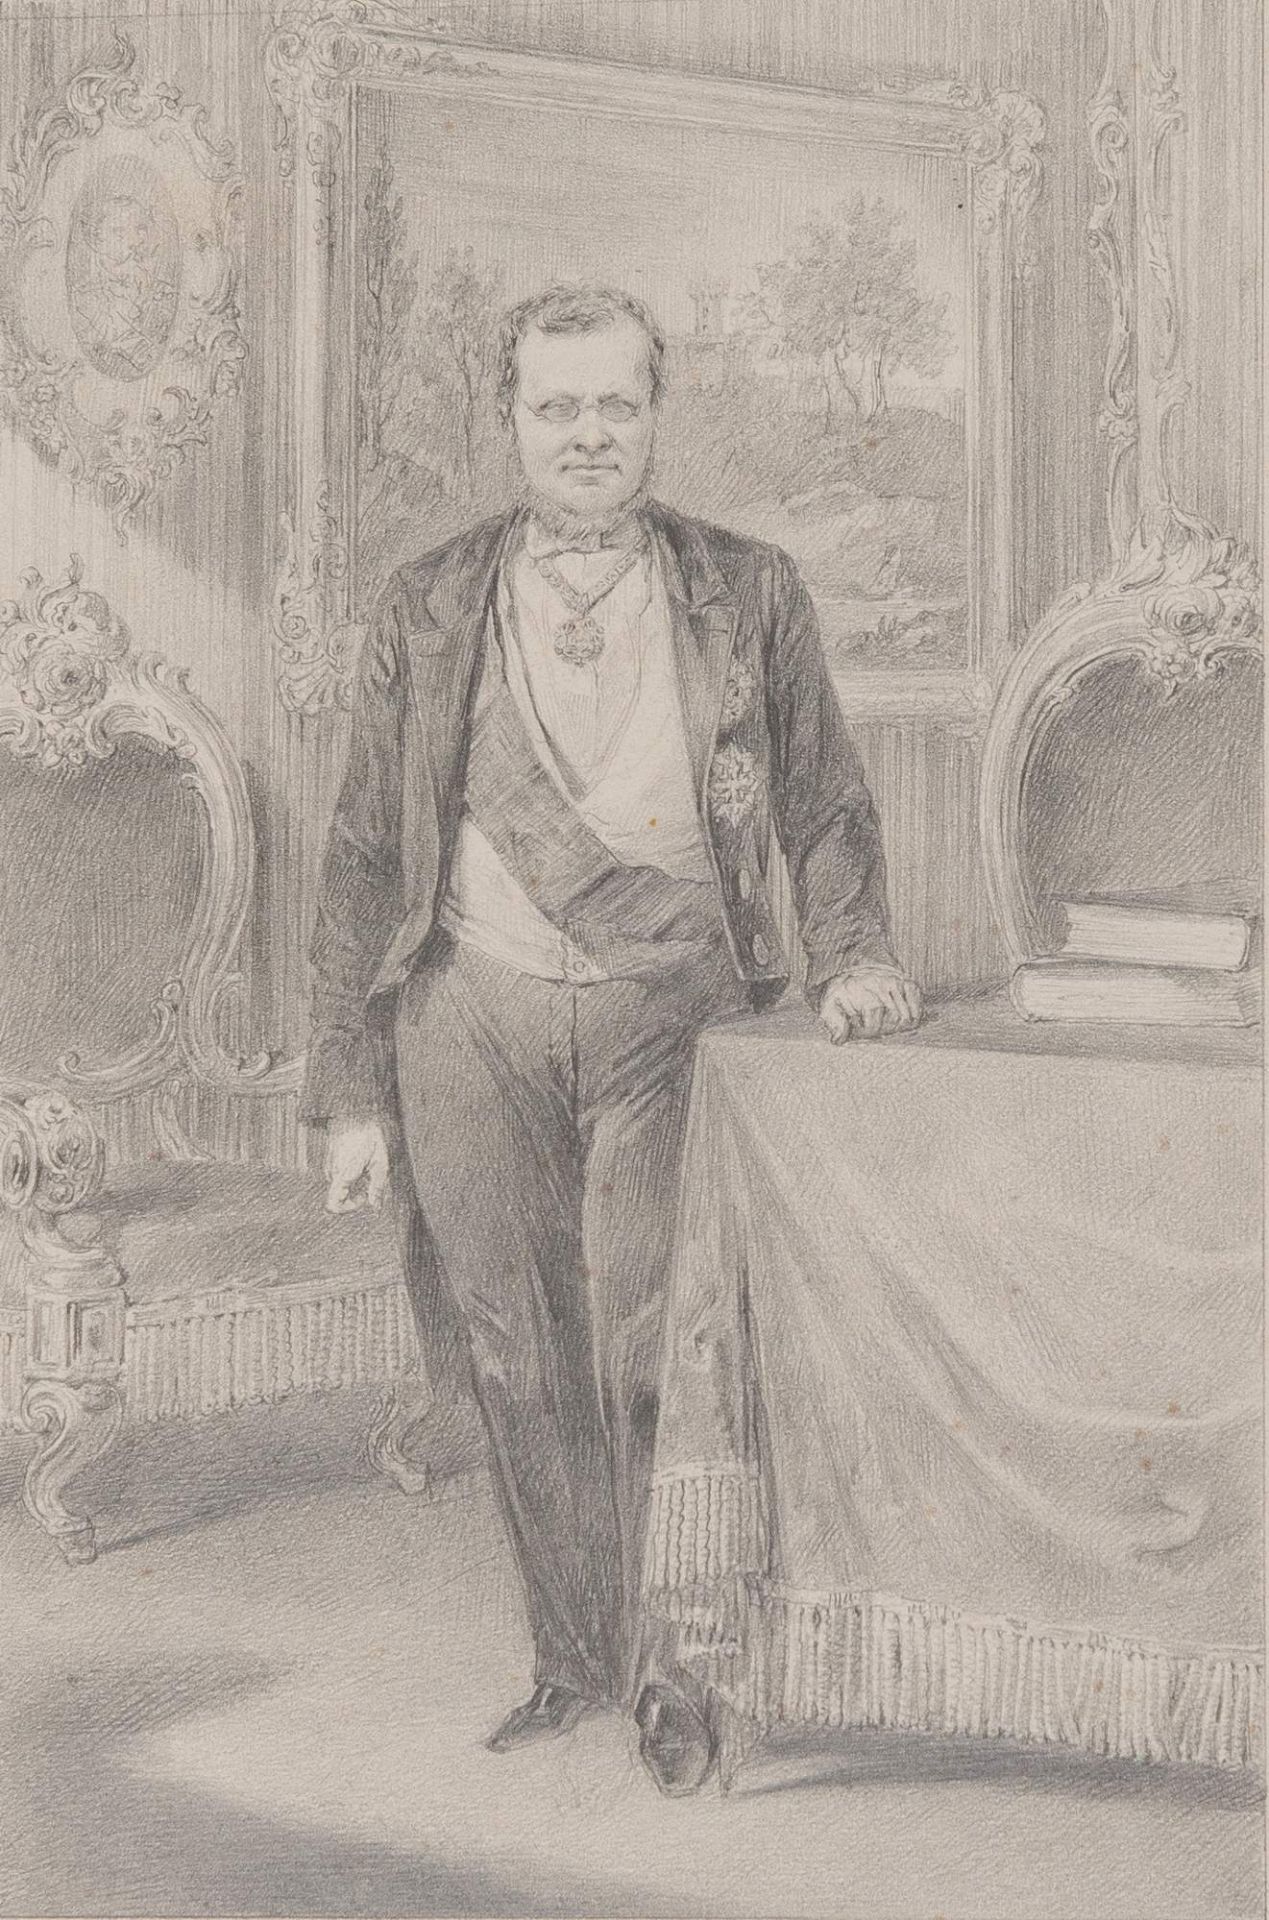 GEROLAMO INDUNO (Milano 1825 - 1890), attr. “Camillo Benso conte di Cavour”. Disegno su carta. Cm